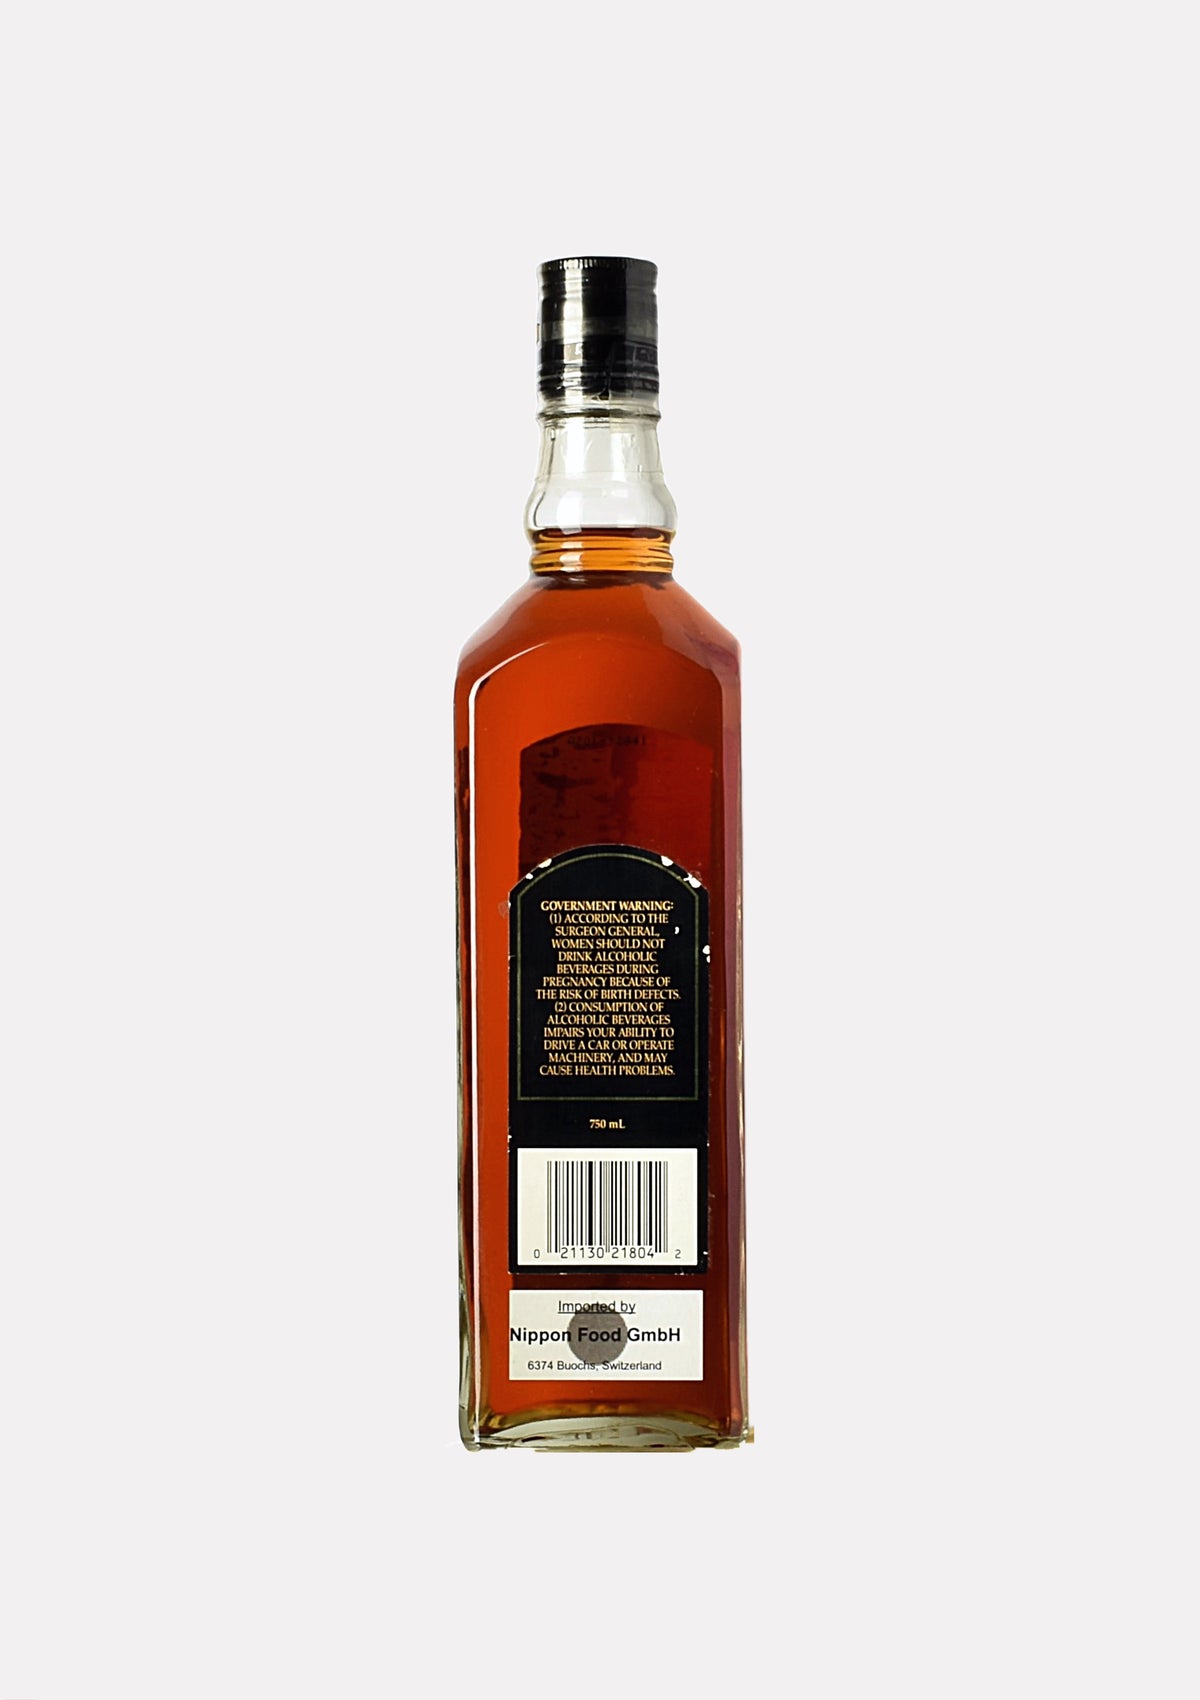 Kentucky Straight Bourbon Whiskey Sour Mash 8 Jahre